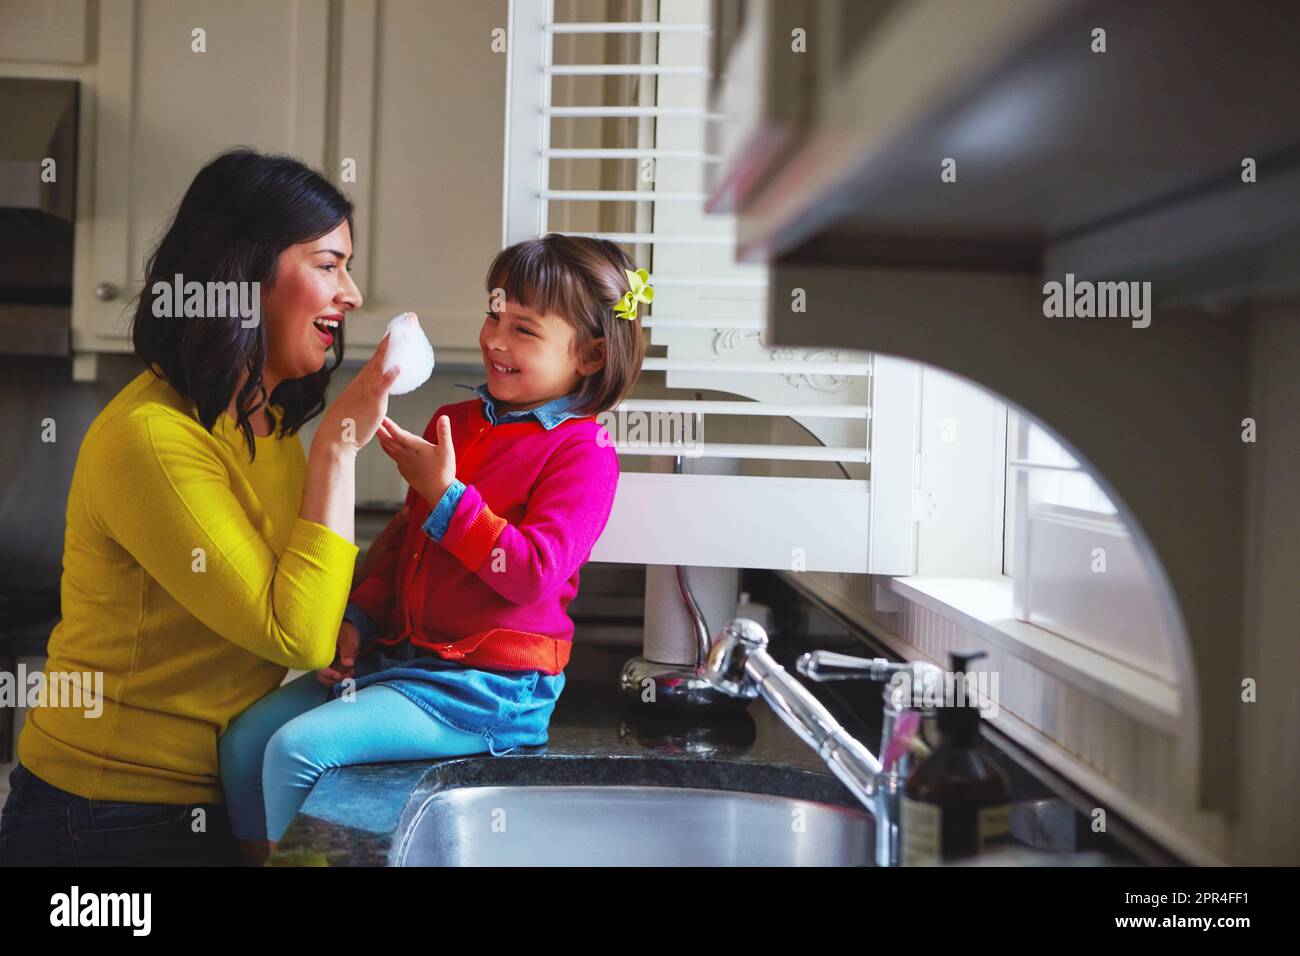 Blitzsauber, spitz und glitzernd. Eine junge Mutter und ihre Tochter, die am Waschbecken spielen. Stockfoto